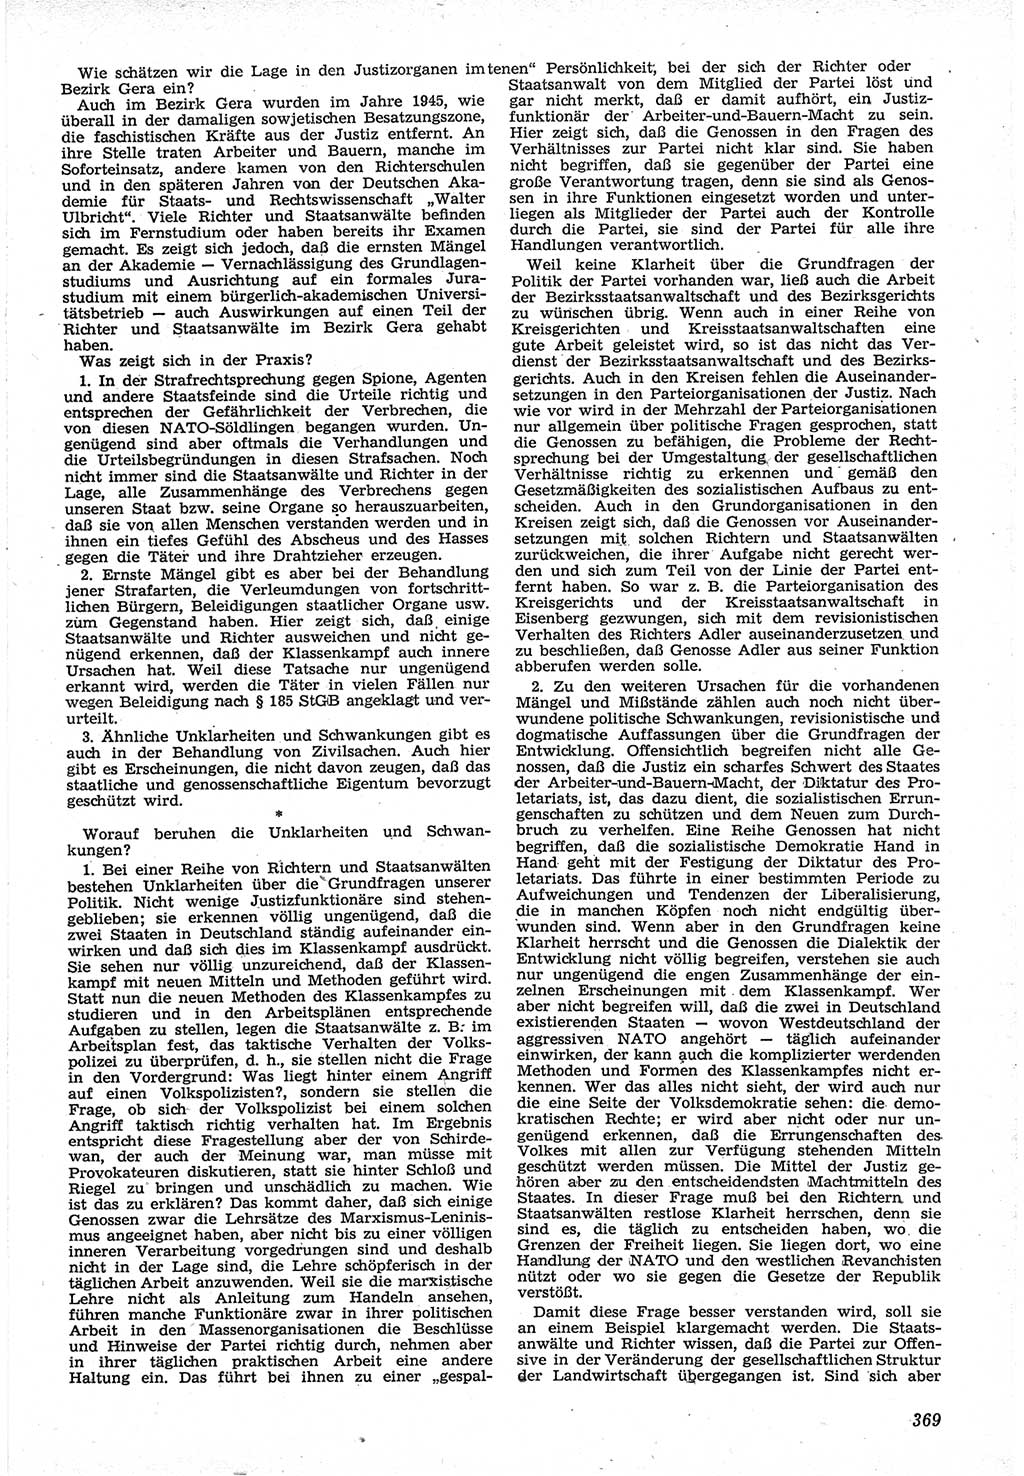 Neue Justiz (NJ), Zeitschrift für Recht und Rechtswissenschaft [Deutsche Demokratische Republik (DDR)], 12. Jahrgang 1958, Seite 369 (NJ DDR 1958, S. 369)